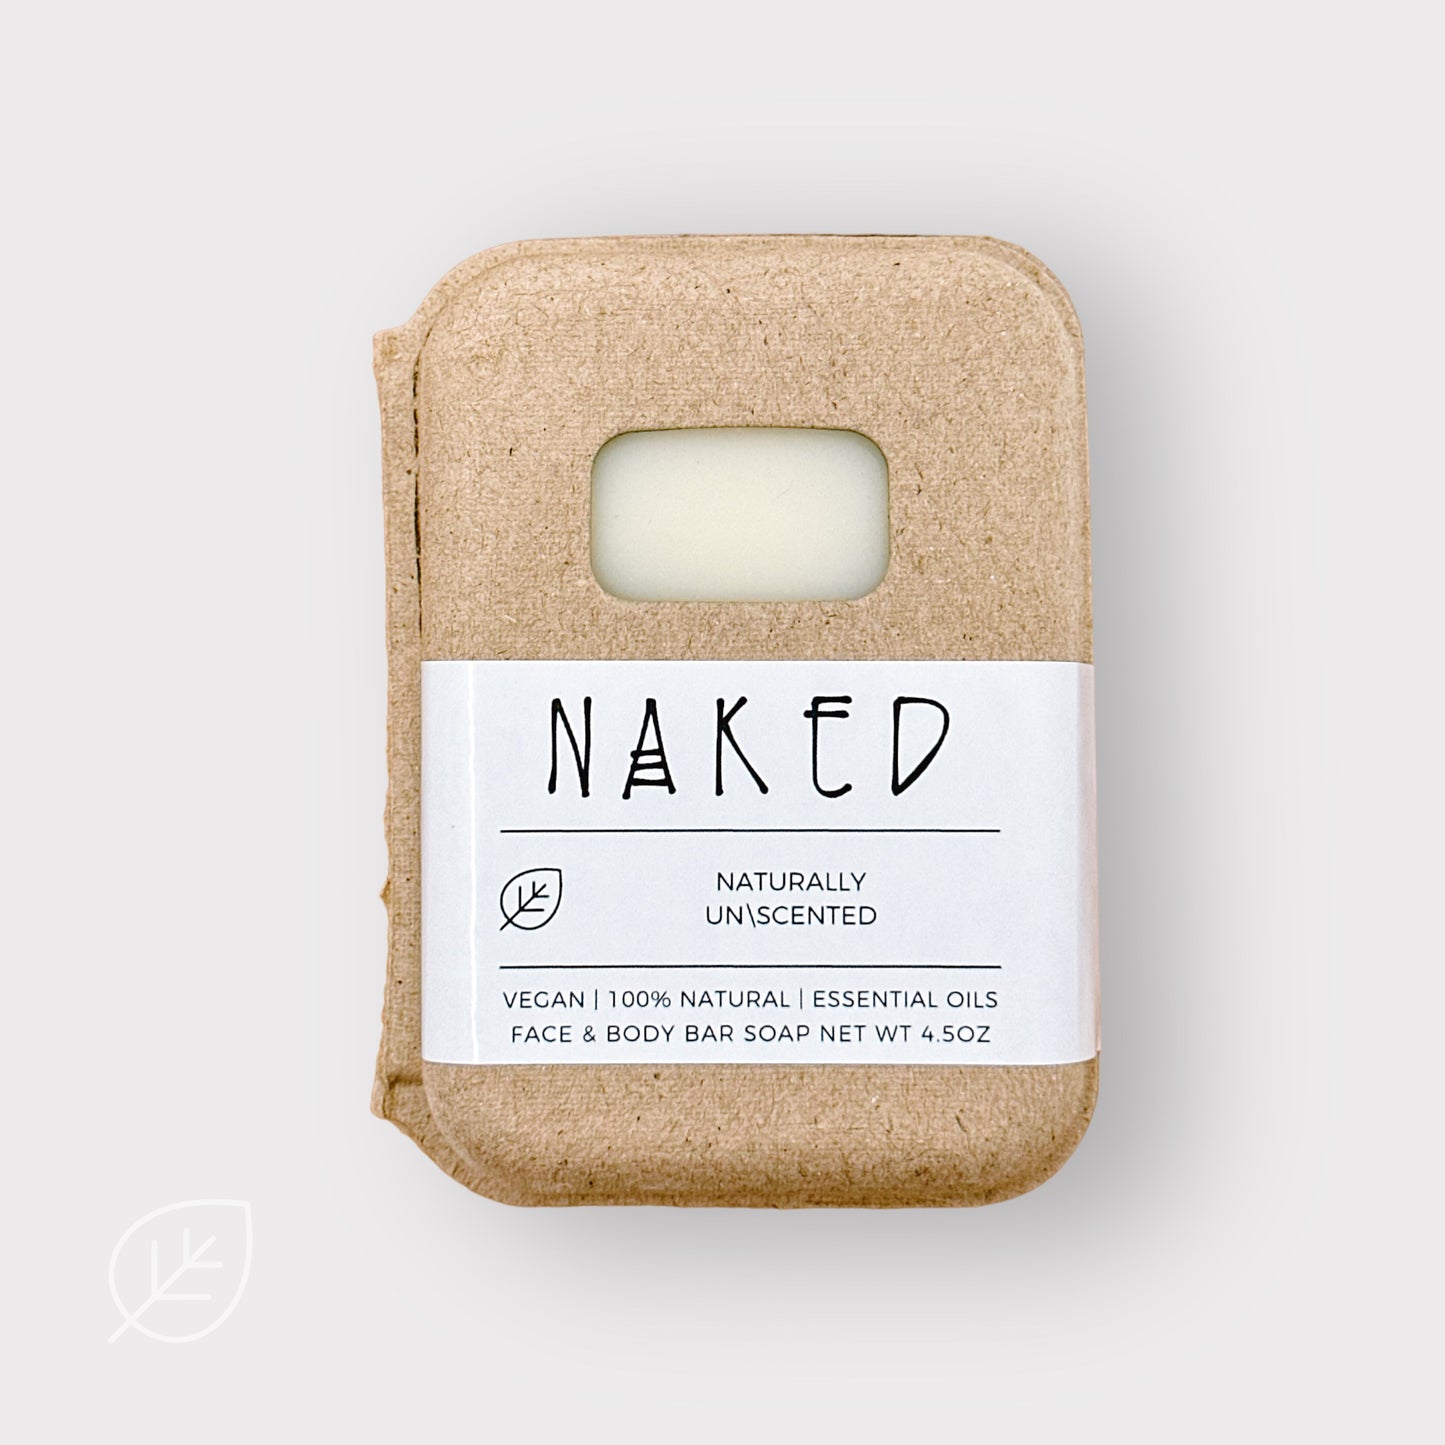 Naked Bar Soap - Unscented For Sensitive Skin